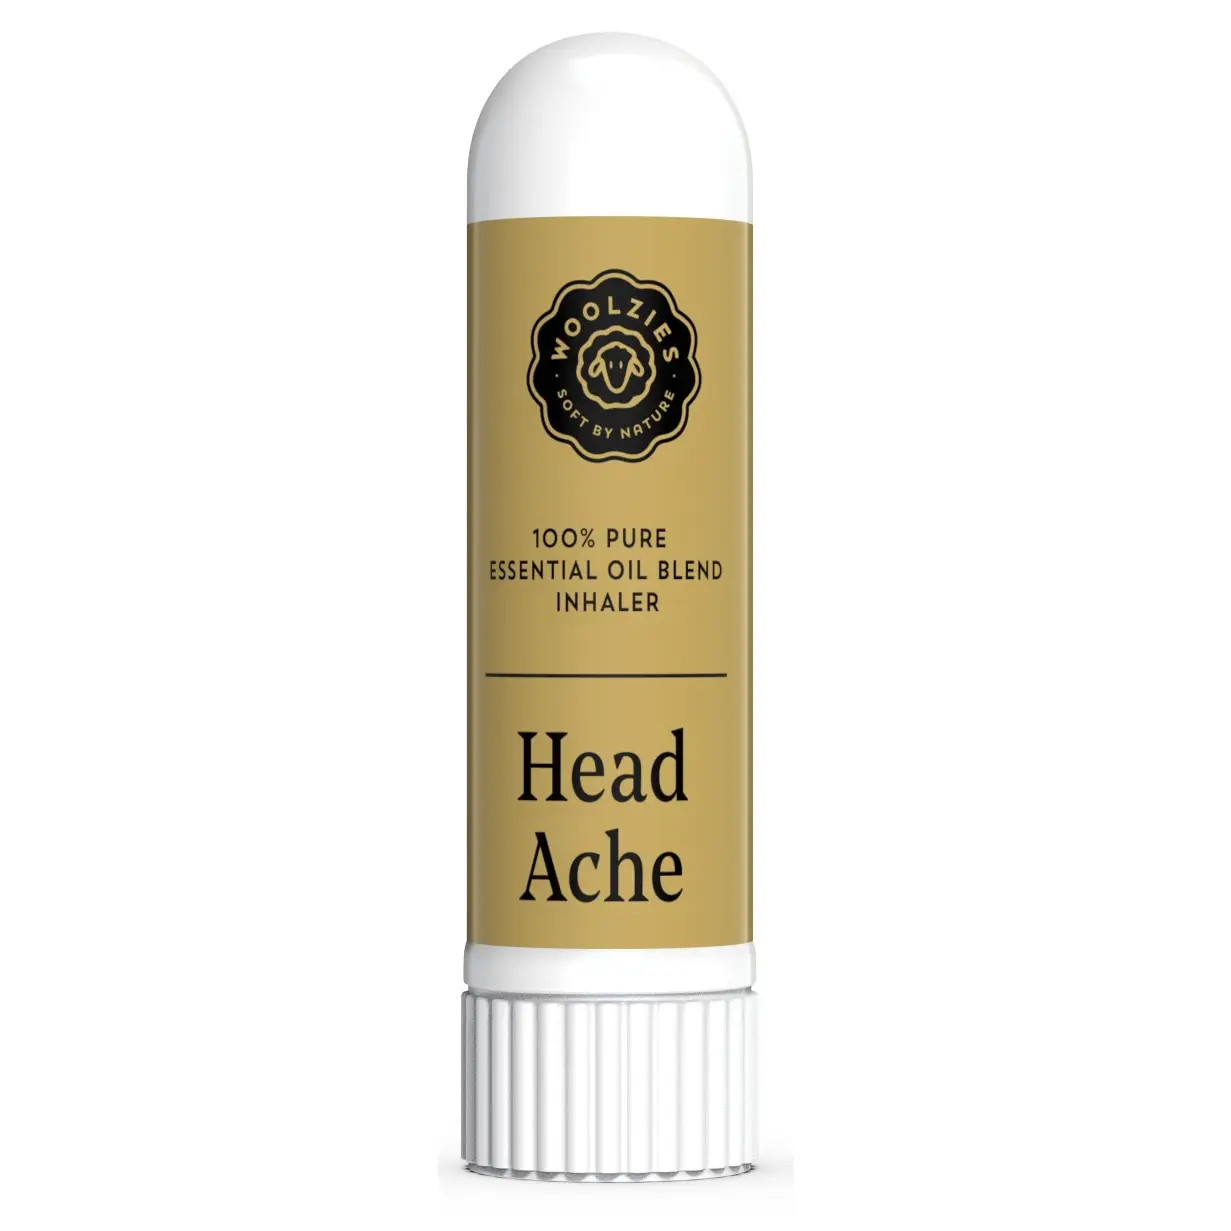 Head Ache Essential Oil Inhaler